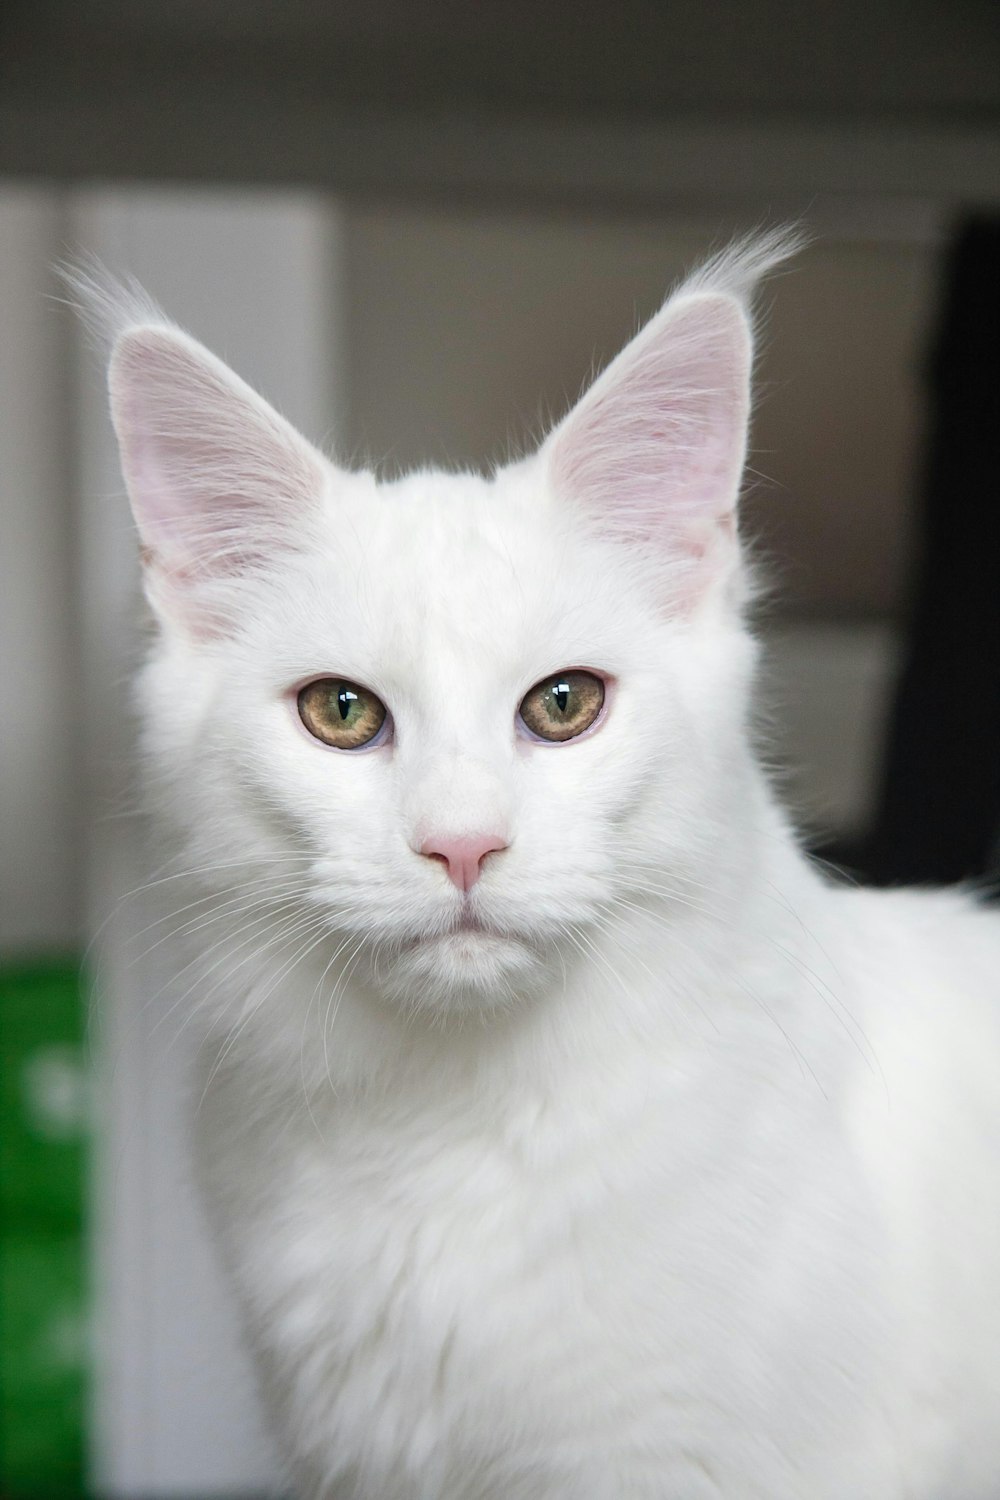 クローズアップ写真の白猫